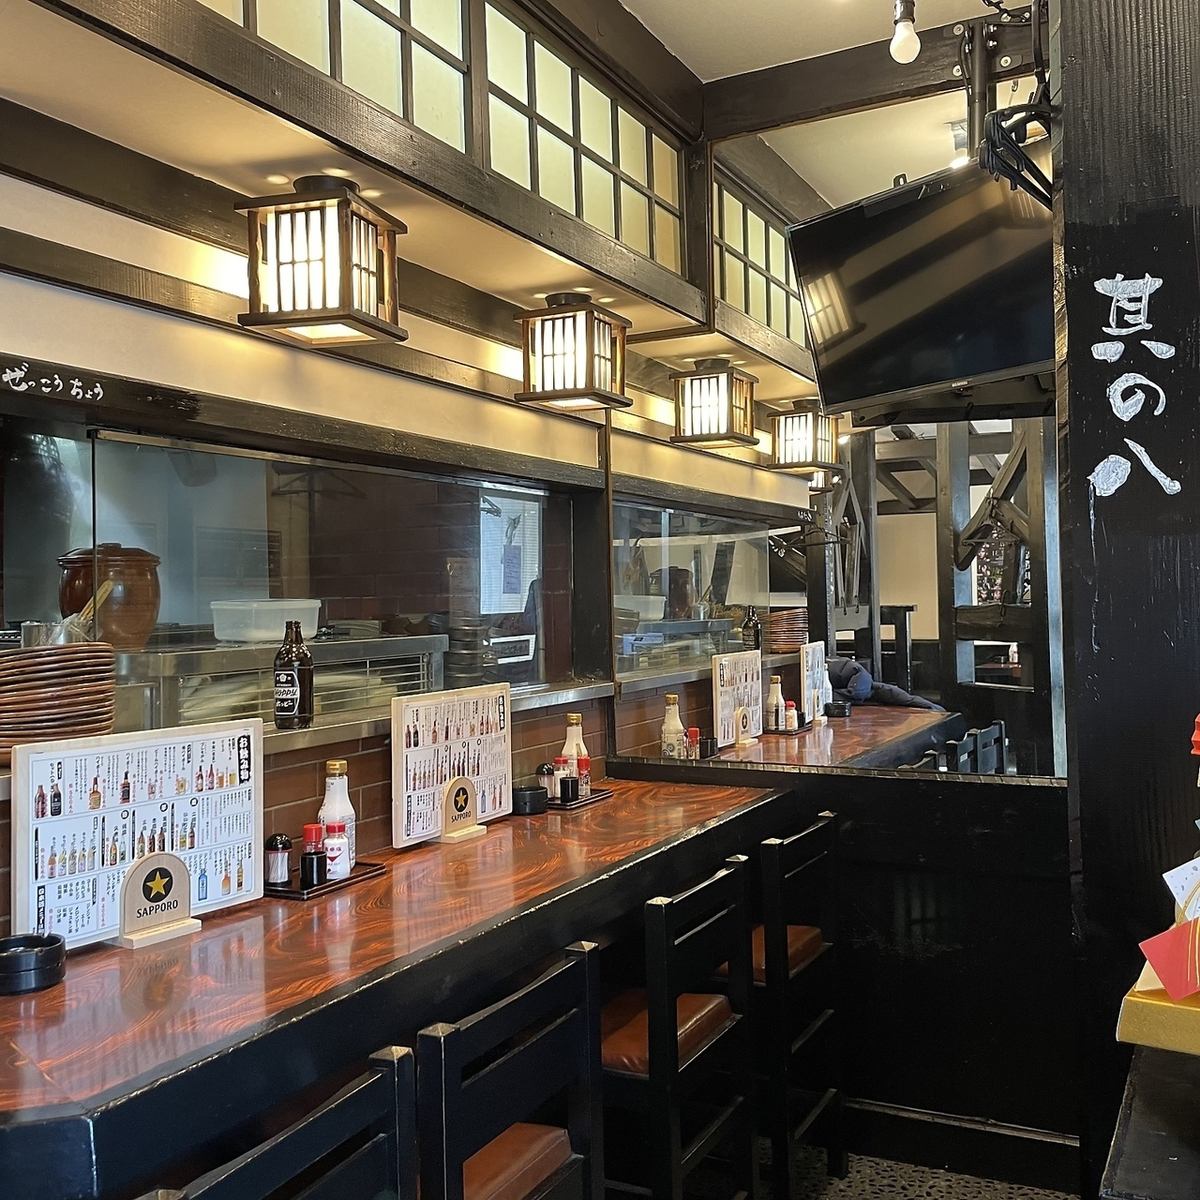 能以合理的价格享受我们引以为豪的手工日本料理的餐厅！